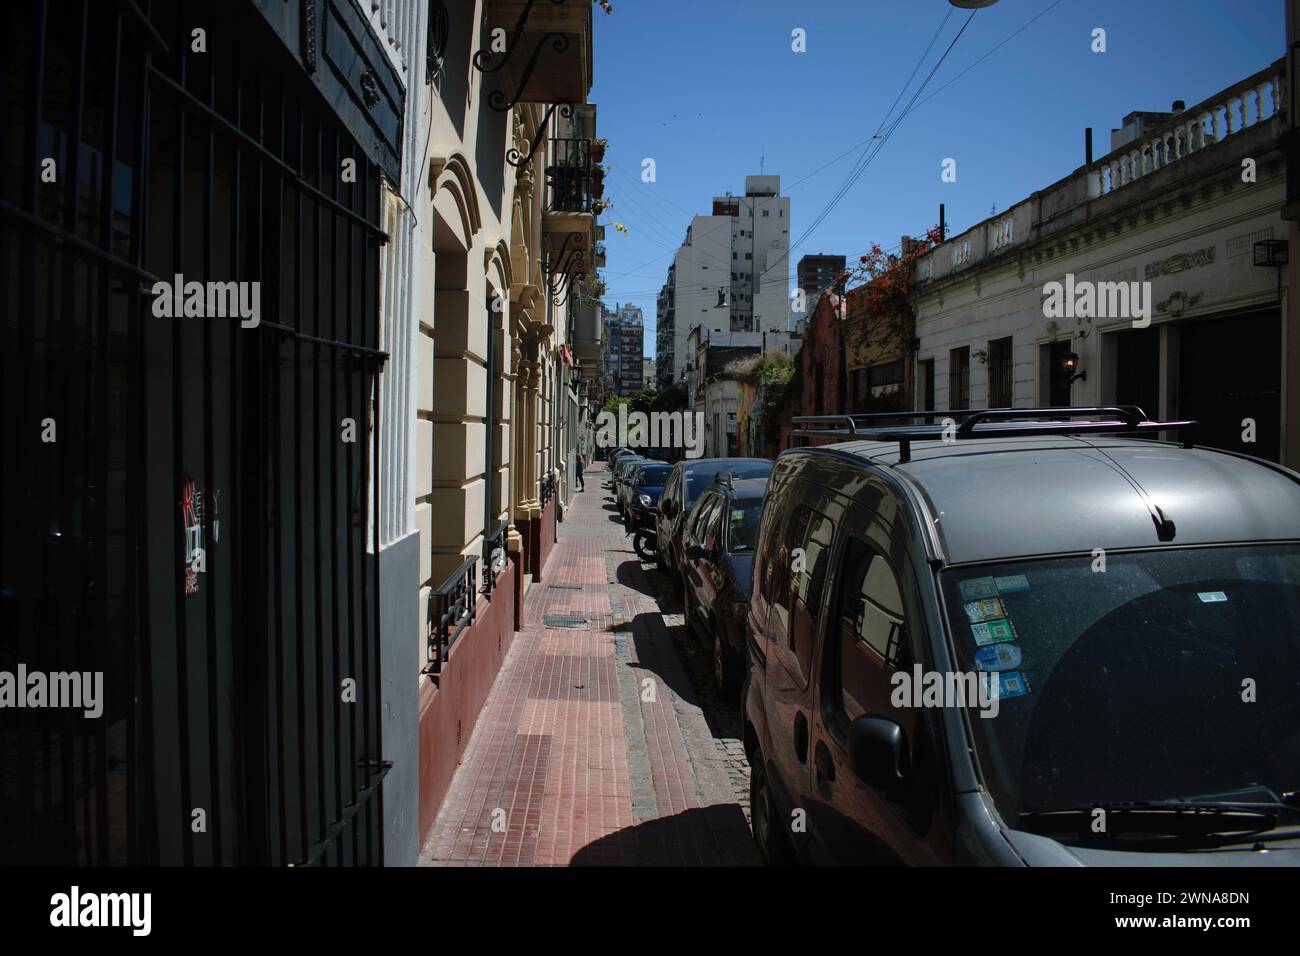 San Telmo est un quartier historique situé à Buenos Aires, en Argentine. Elle est réputée pour ses rues pavées, son architecture coloniale. Banque D'Images